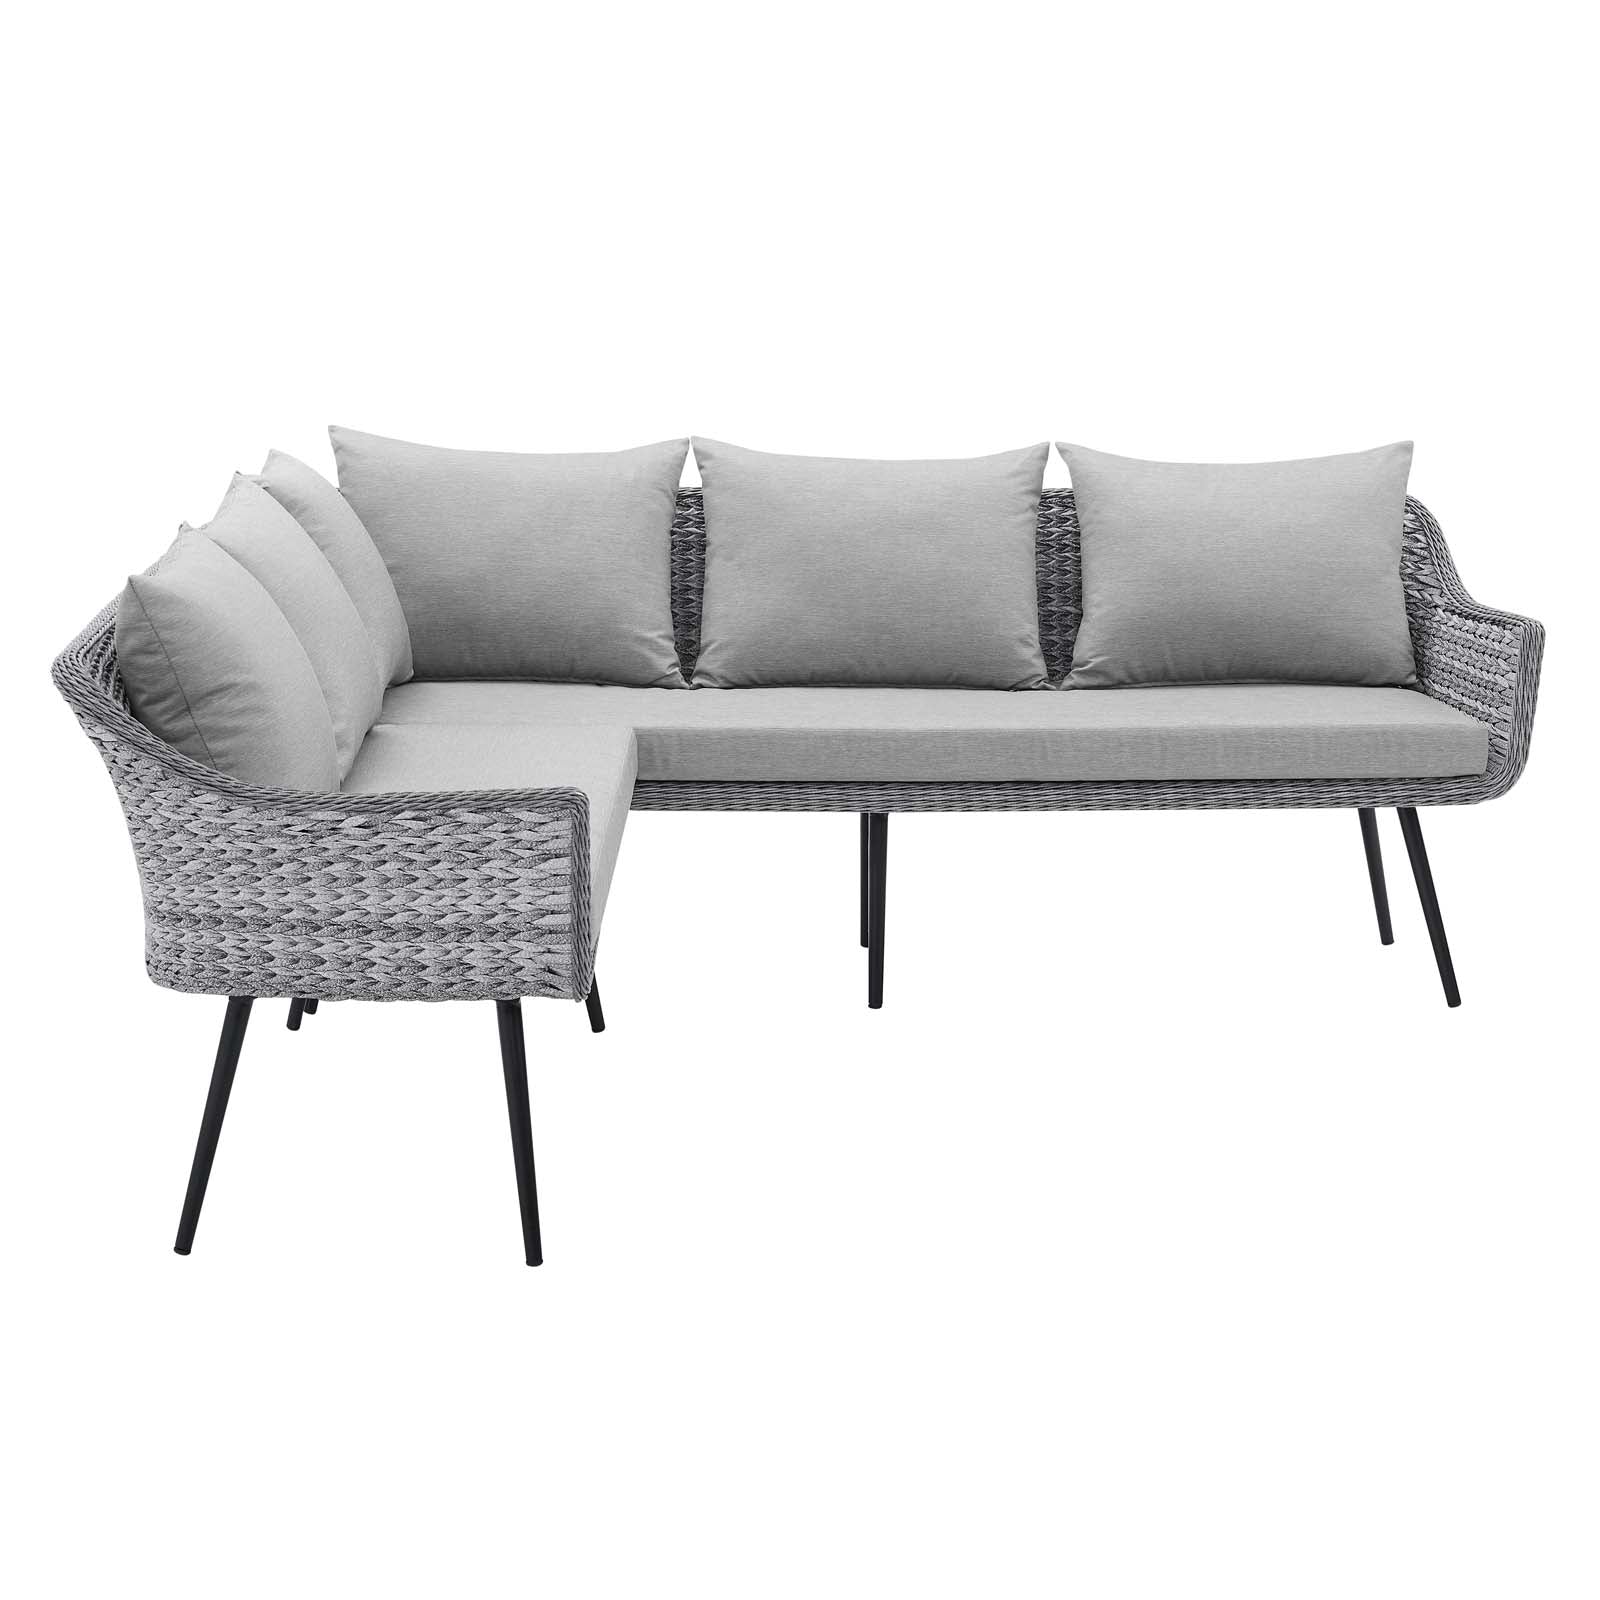 Modway Outdoor Sofas - Endeavor Outdoor Patio Wicker Rattan Sectional Sofa Gray